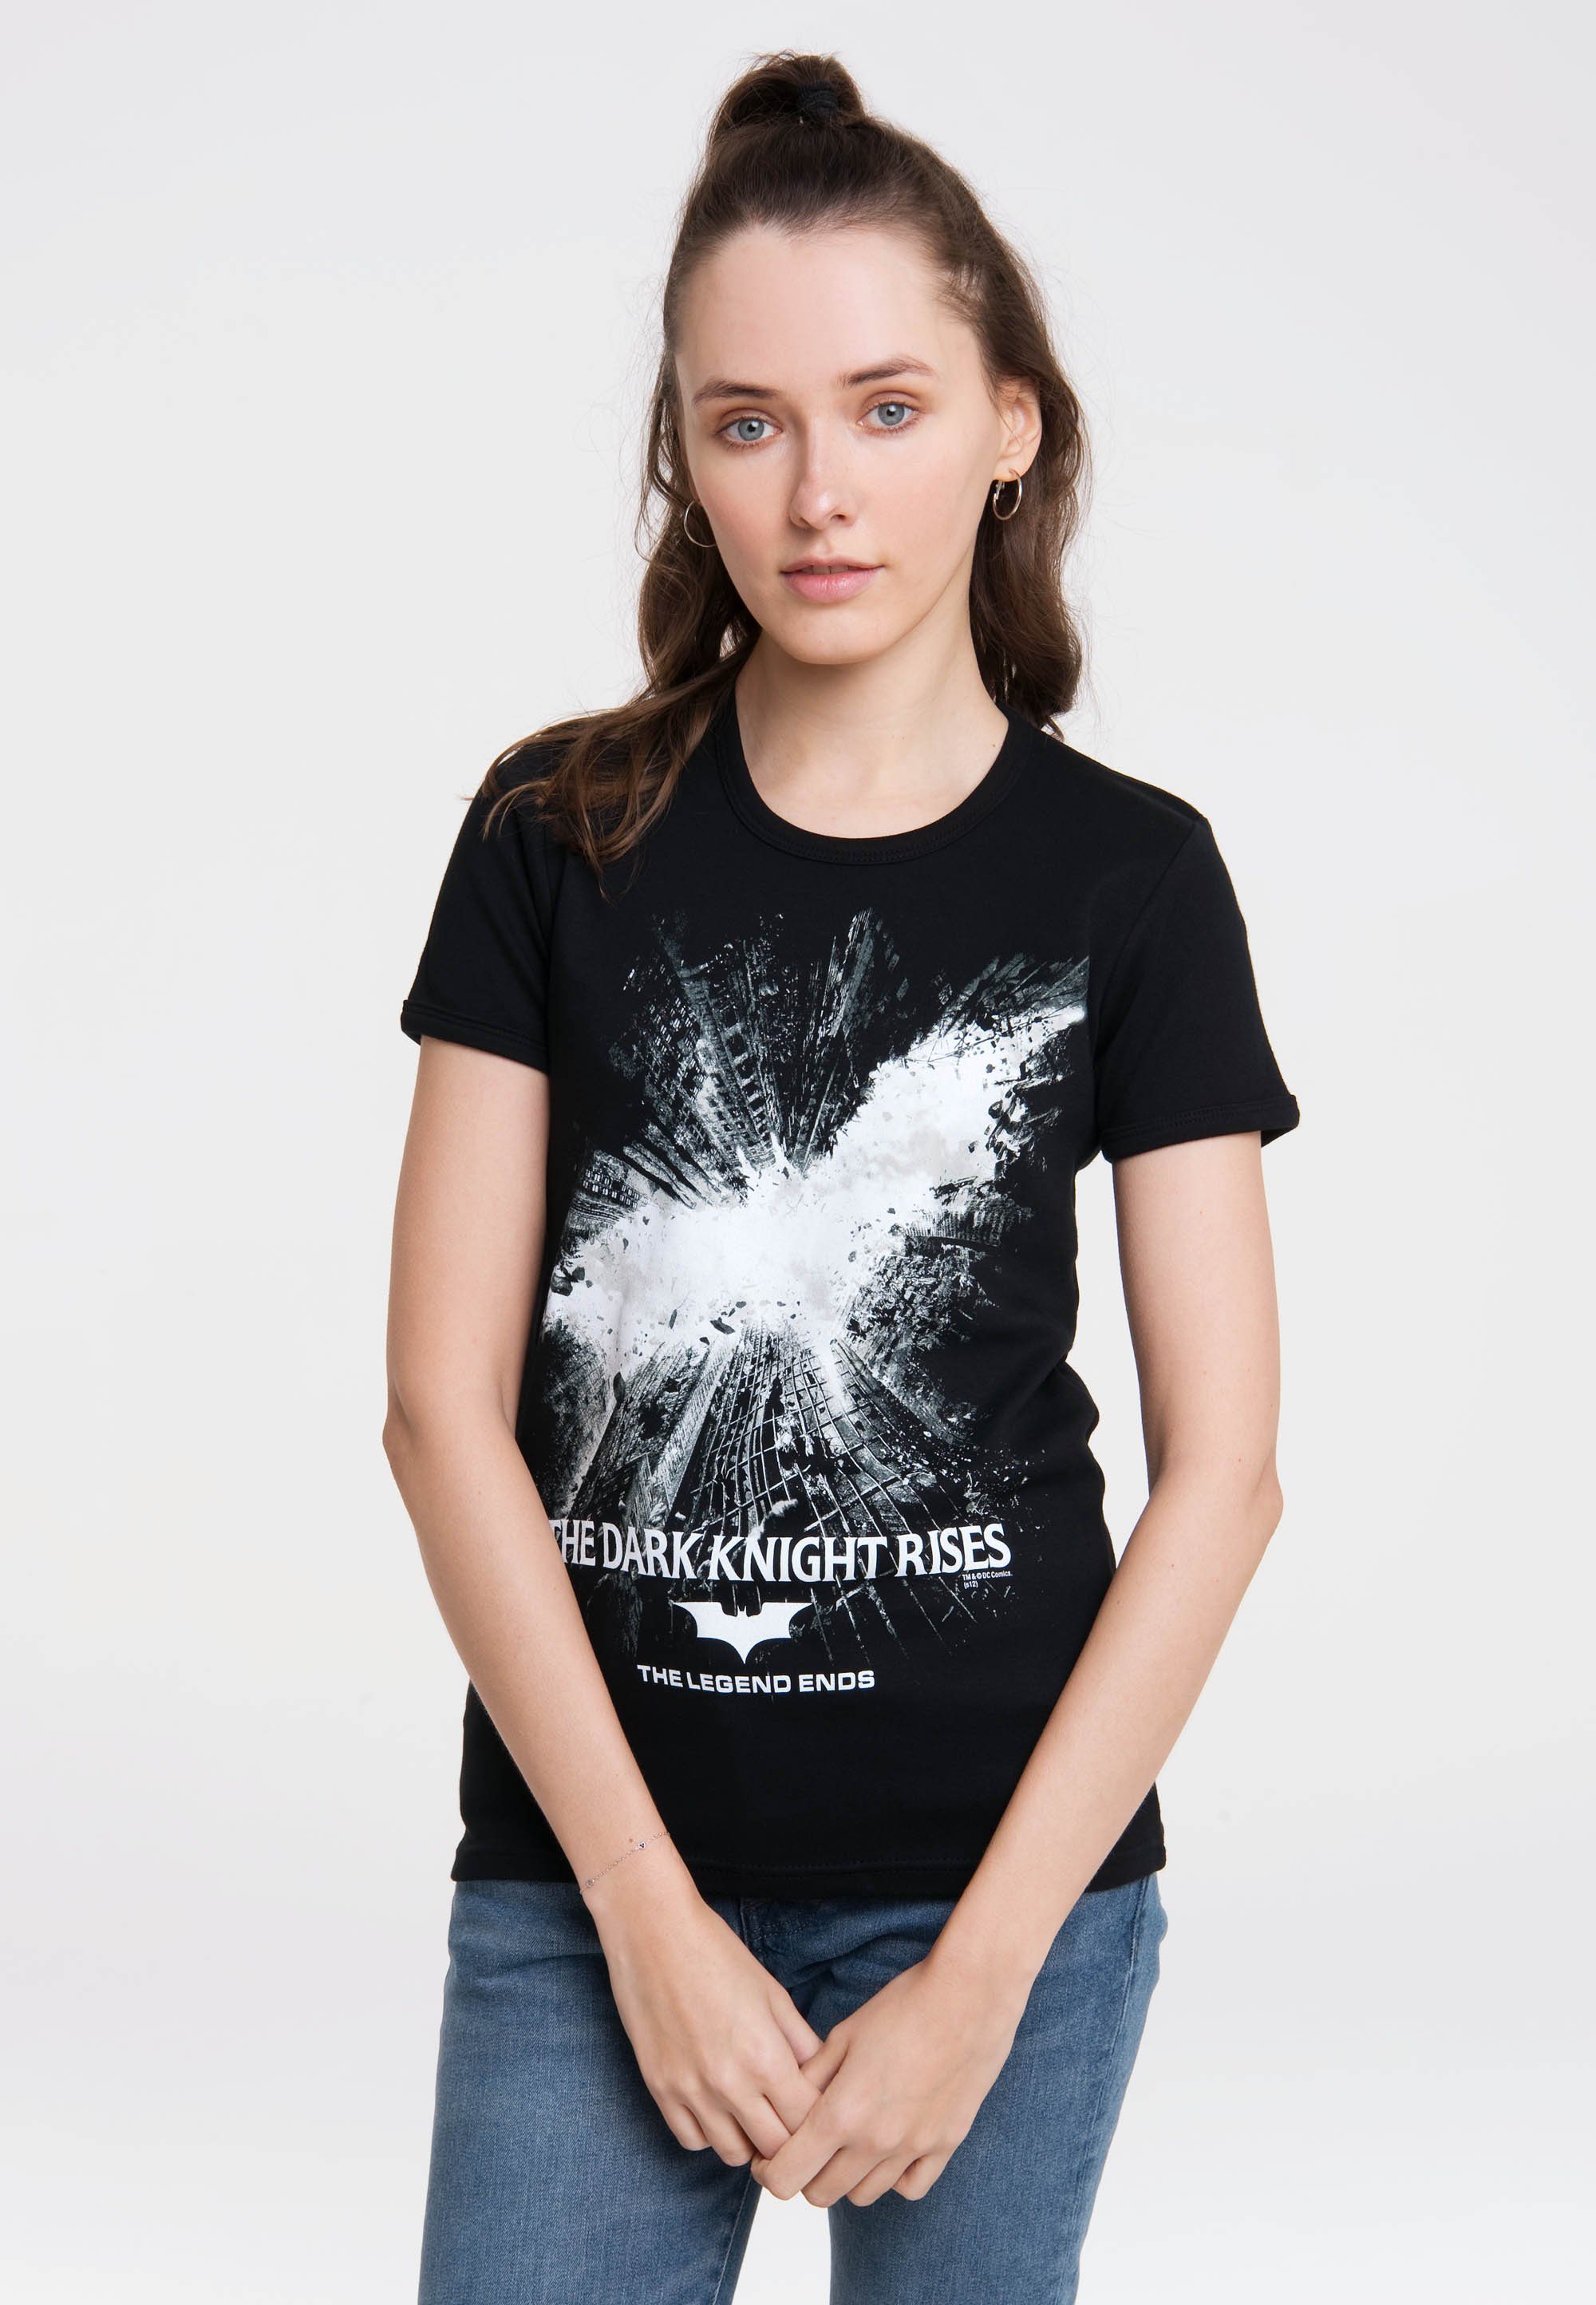 Design LOGOSHIRT – Rises Knight Dark lizenziertem T-Shirt The mit Batman